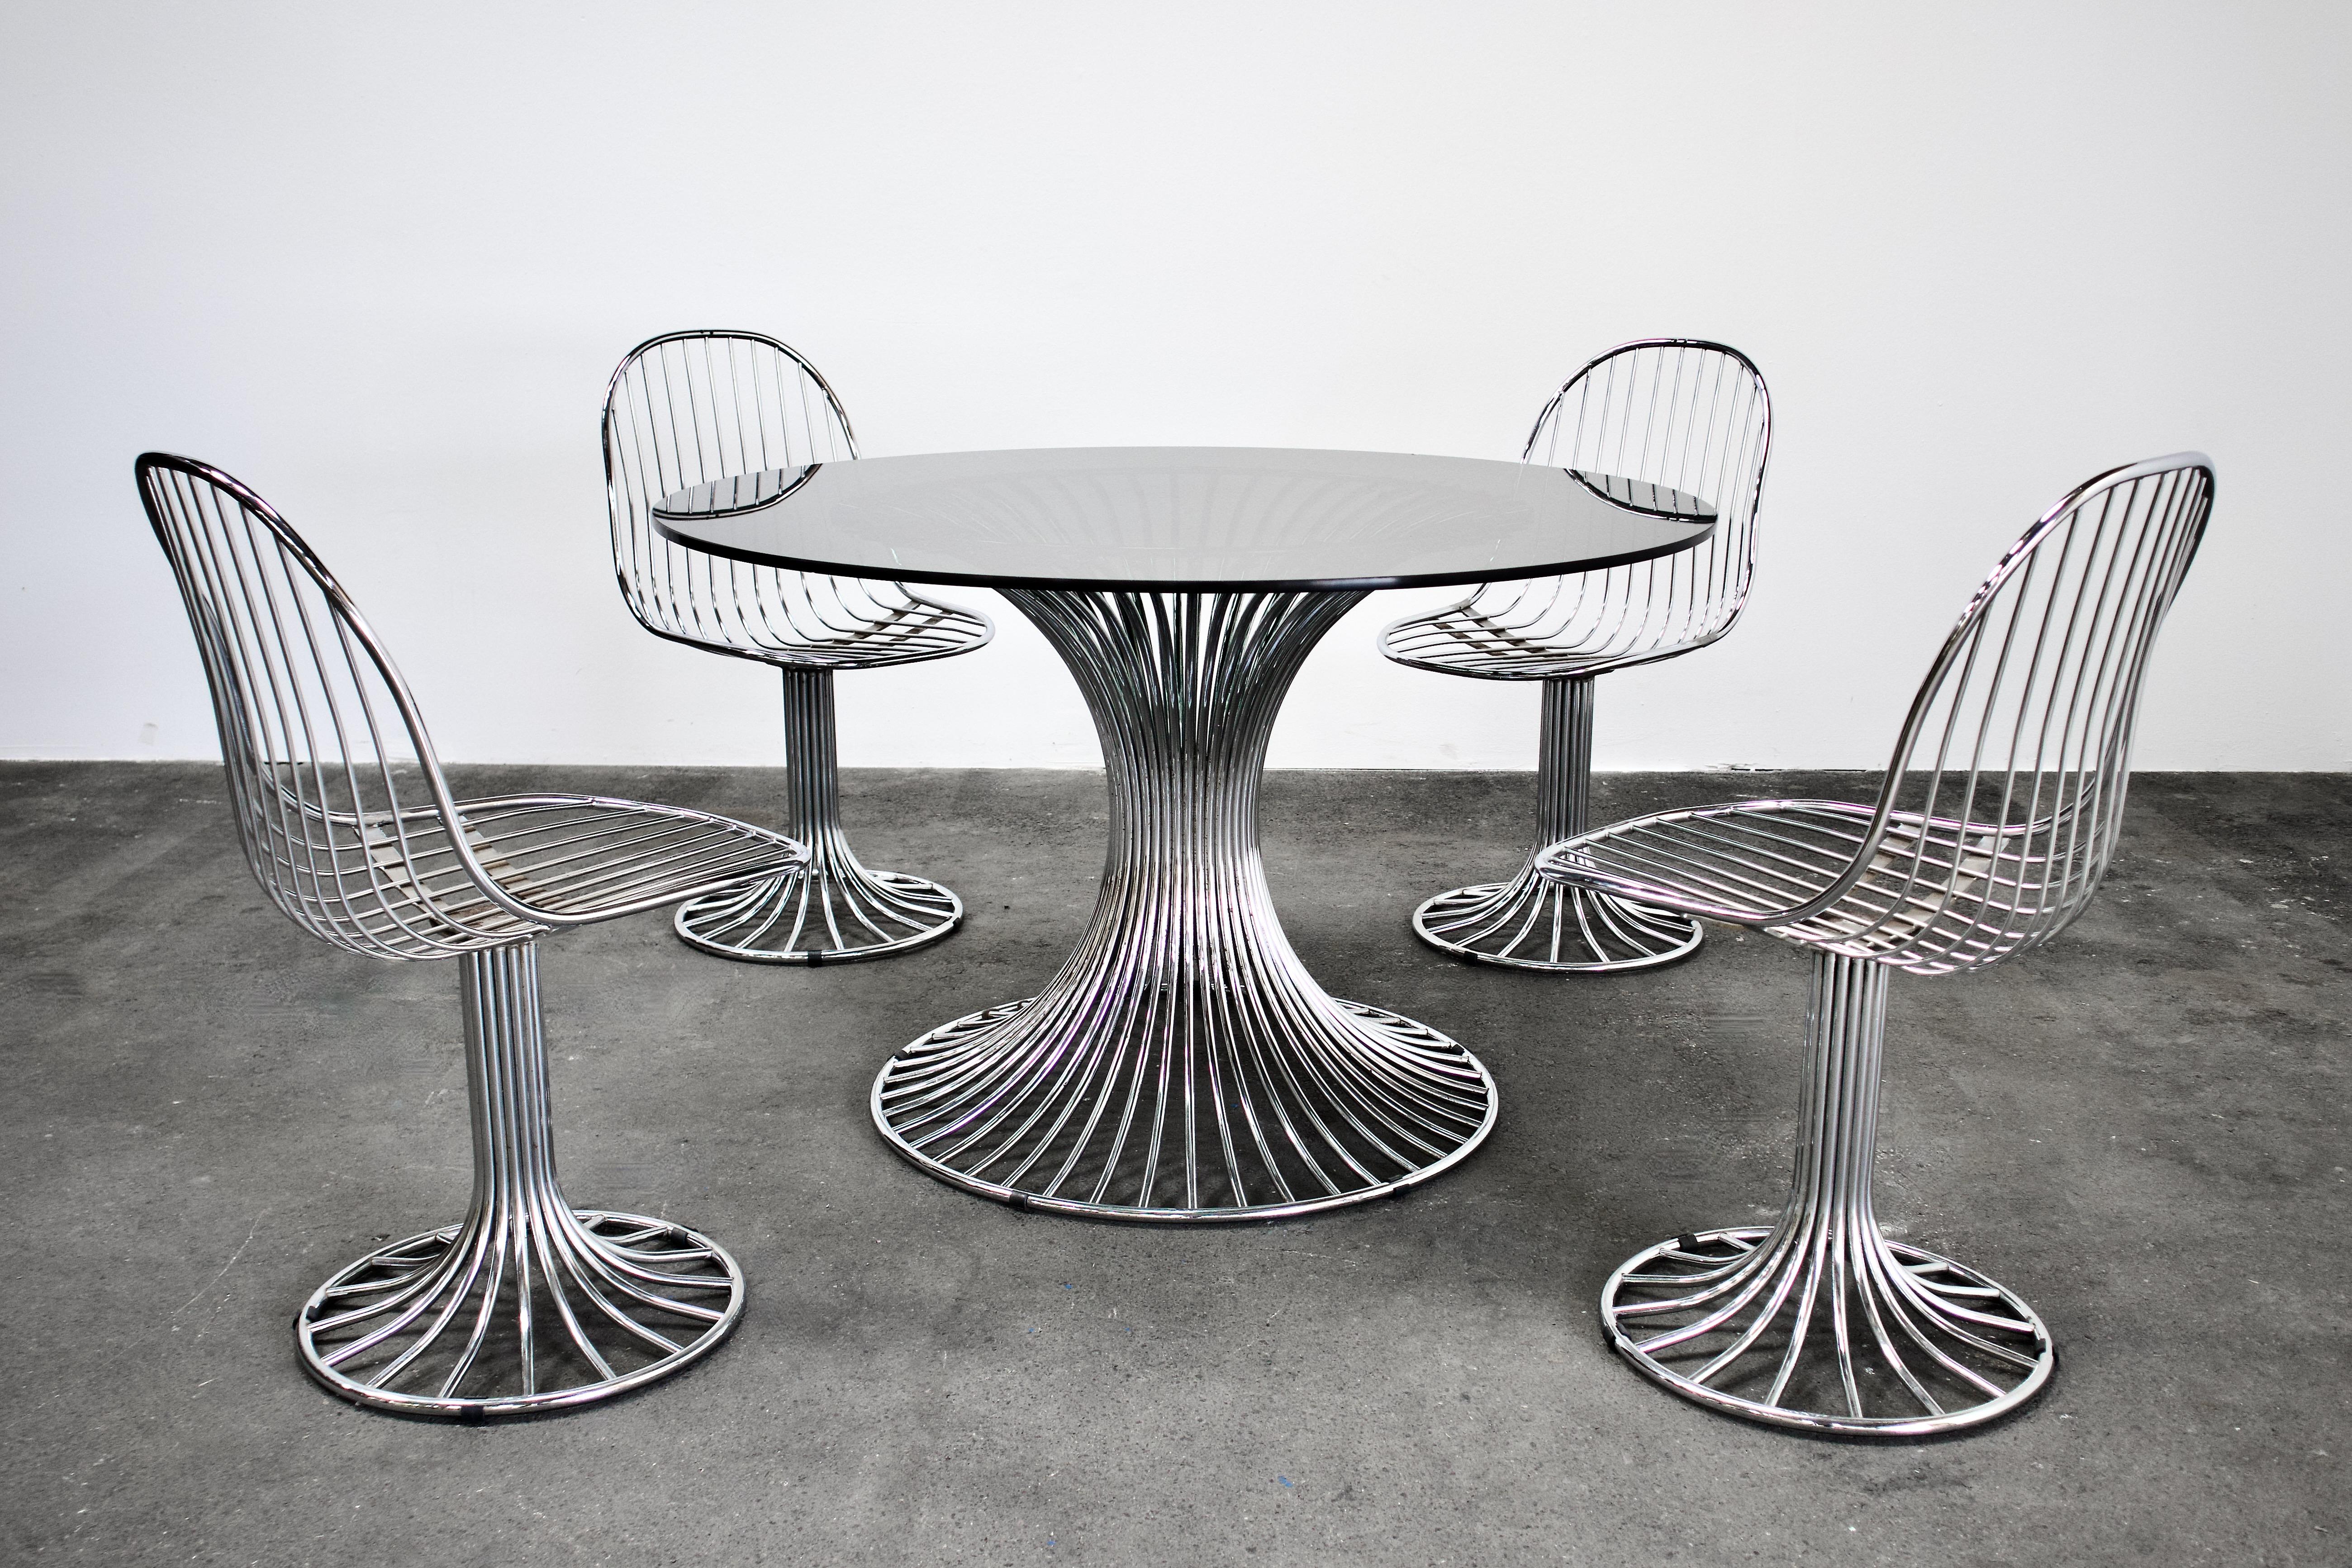 Superbe ensemble de 4 chaises et d'une table de salle à manger ronde en acier tubulaire chromé. Likely par Gastone Rinaldi pour RIMA. Convient à un usage intérieur et extérieur. Les vibrations de l'ère spatiale de l'époque d'Eero Saarinen et de